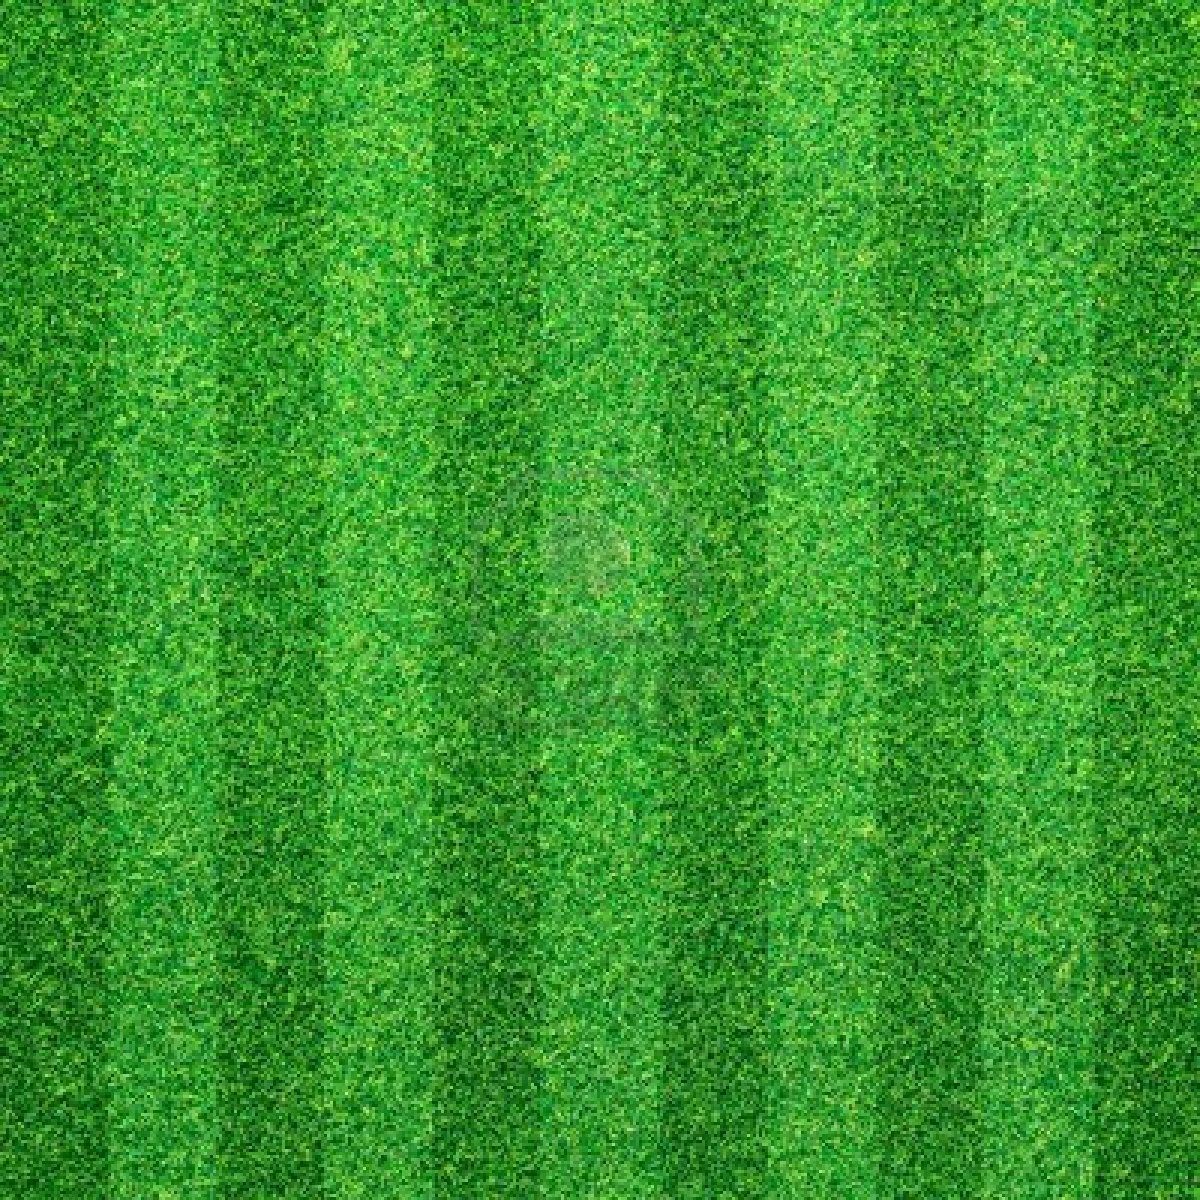 green_field.jpg